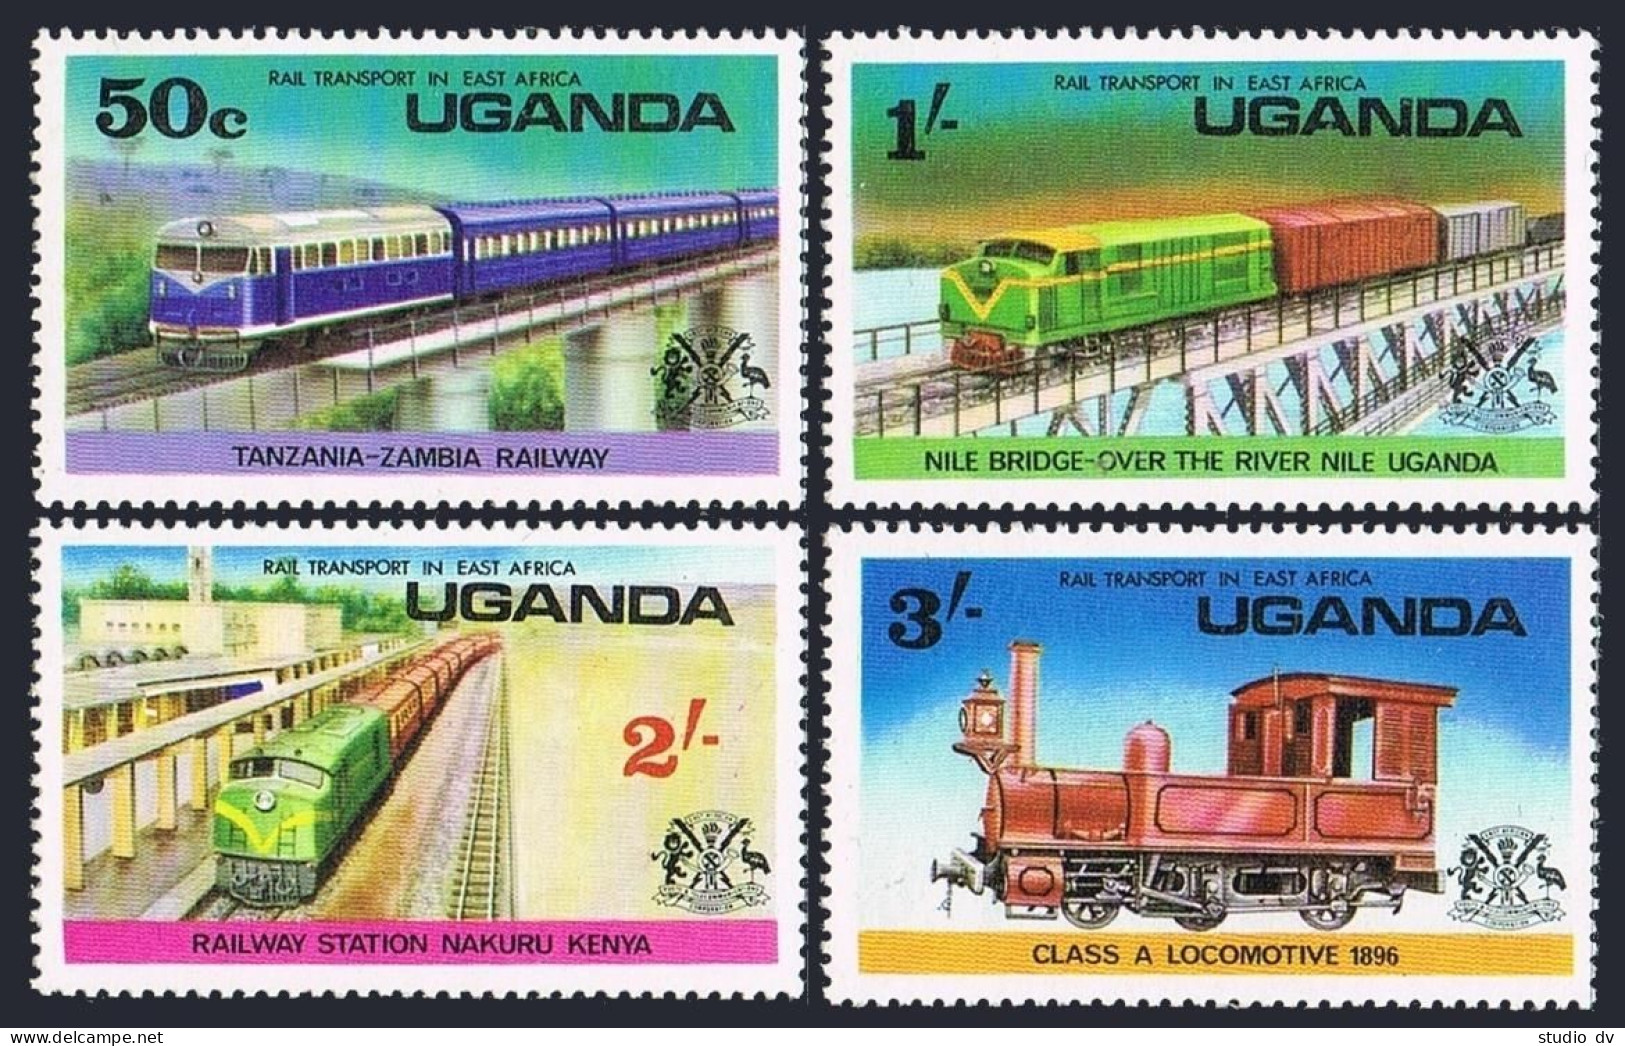 Uganda 155-158,158a,MNH.Michel 145-148,Bl.3. Railway Transport,1976.Bird,Animals - Oeganda (1962-...)